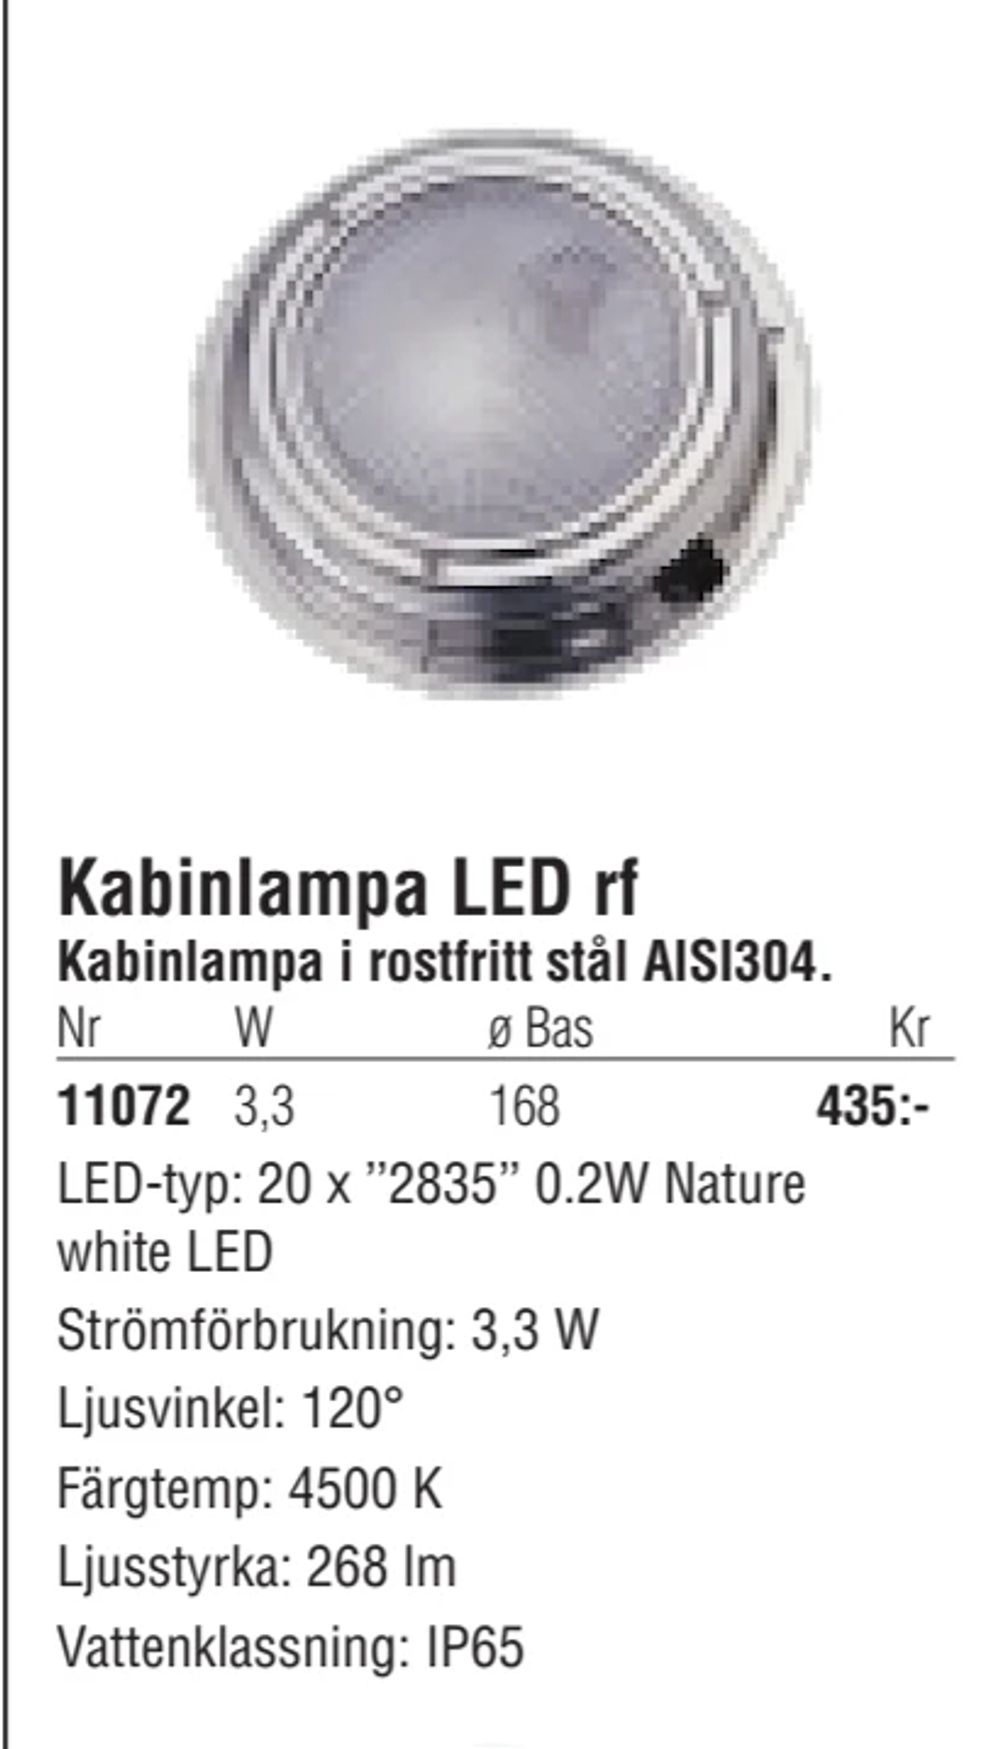 Erbjudanden på Kabinlampa LED rf från Erlandsons Brygga för 435 kr